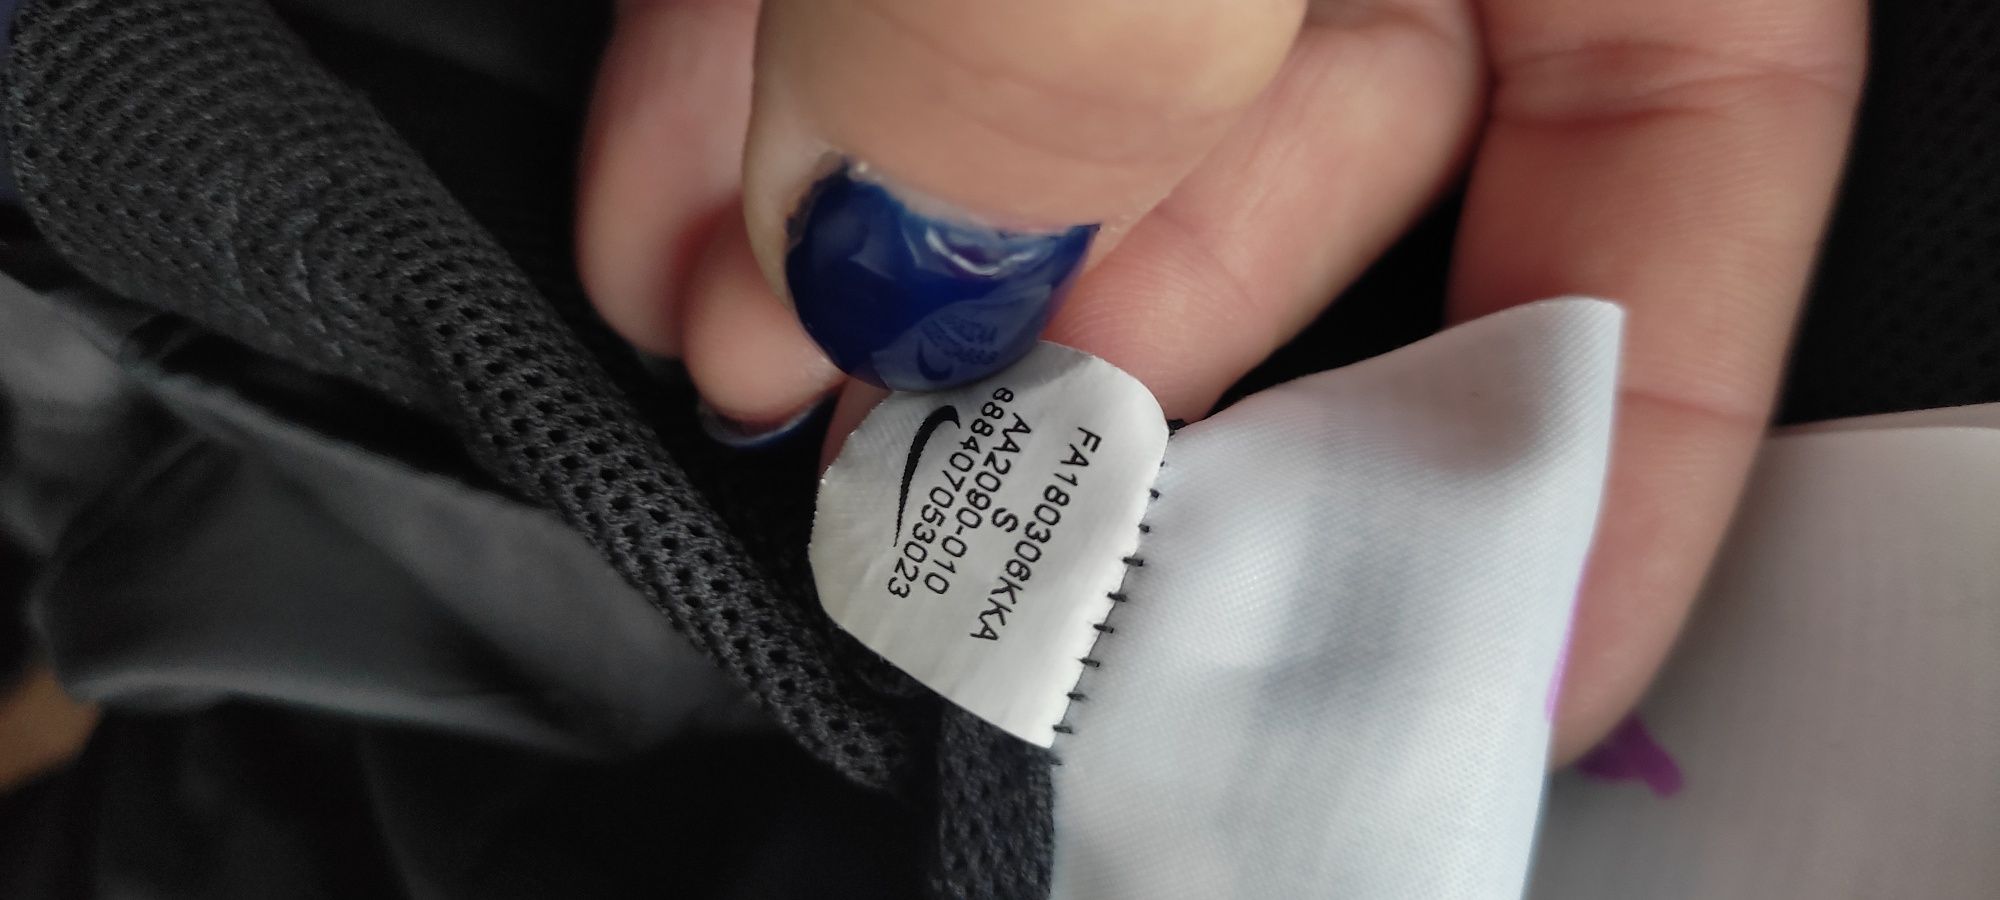 Nike kurtka cienka przeciwdeszczowa damska s